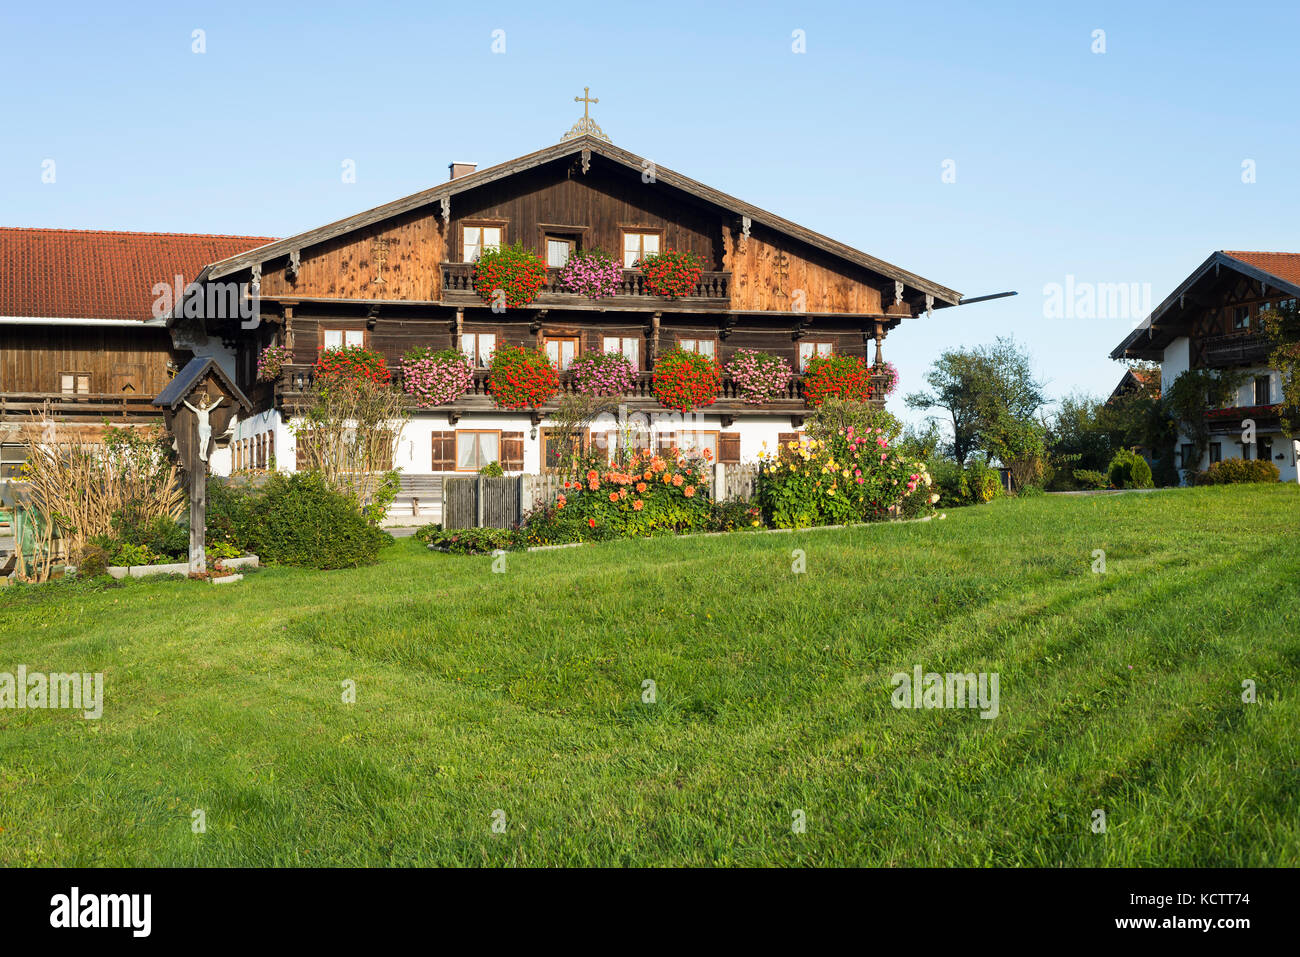 Bauernhof Häuser mit Holzfassade im traditionellen bayerischen Stil in Oberbayern mit blühenden Blumen in der Morgensonne, Irschenberg, Bayern, Deutschland Stockfoto